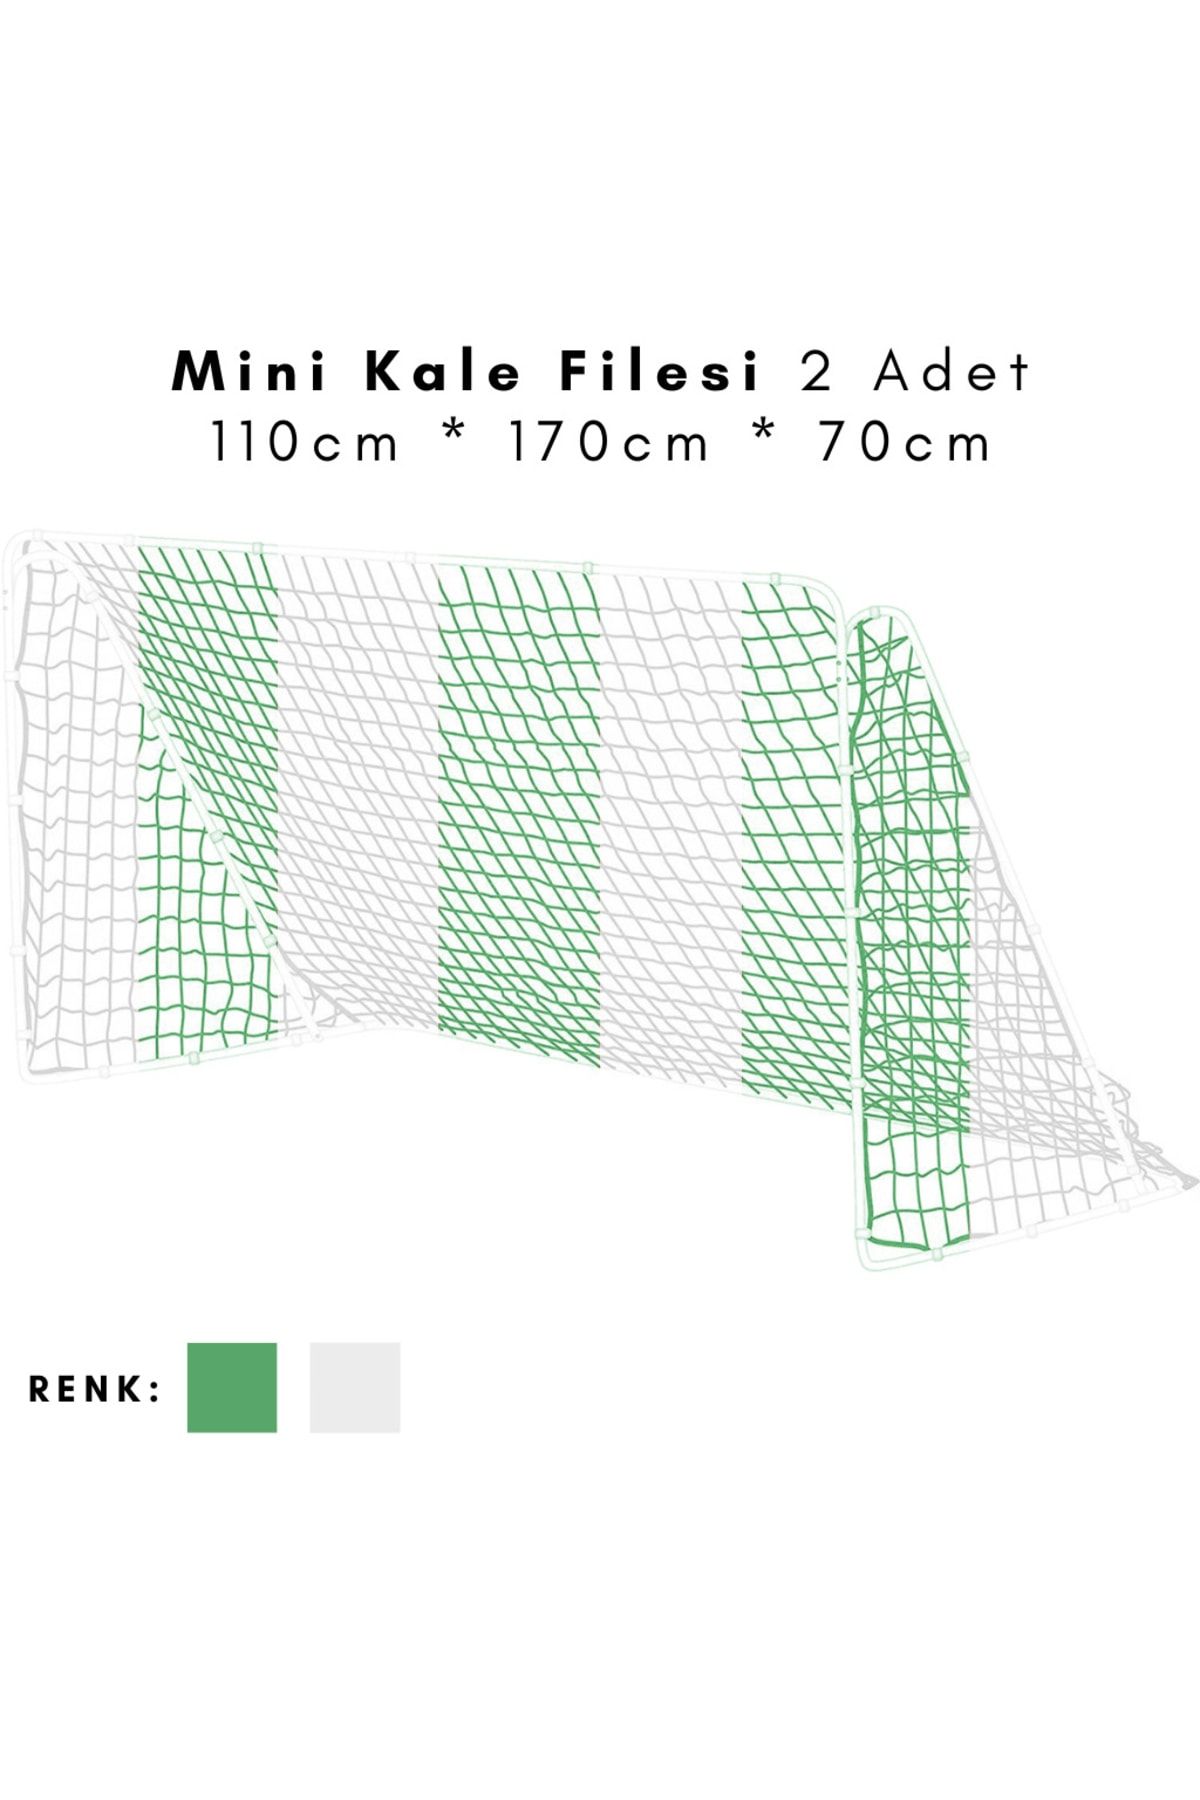 ÖZBEK Minyatür Kale Filesi Mini Kale Ağı 110 x 170 x 70cm 2 Adet File